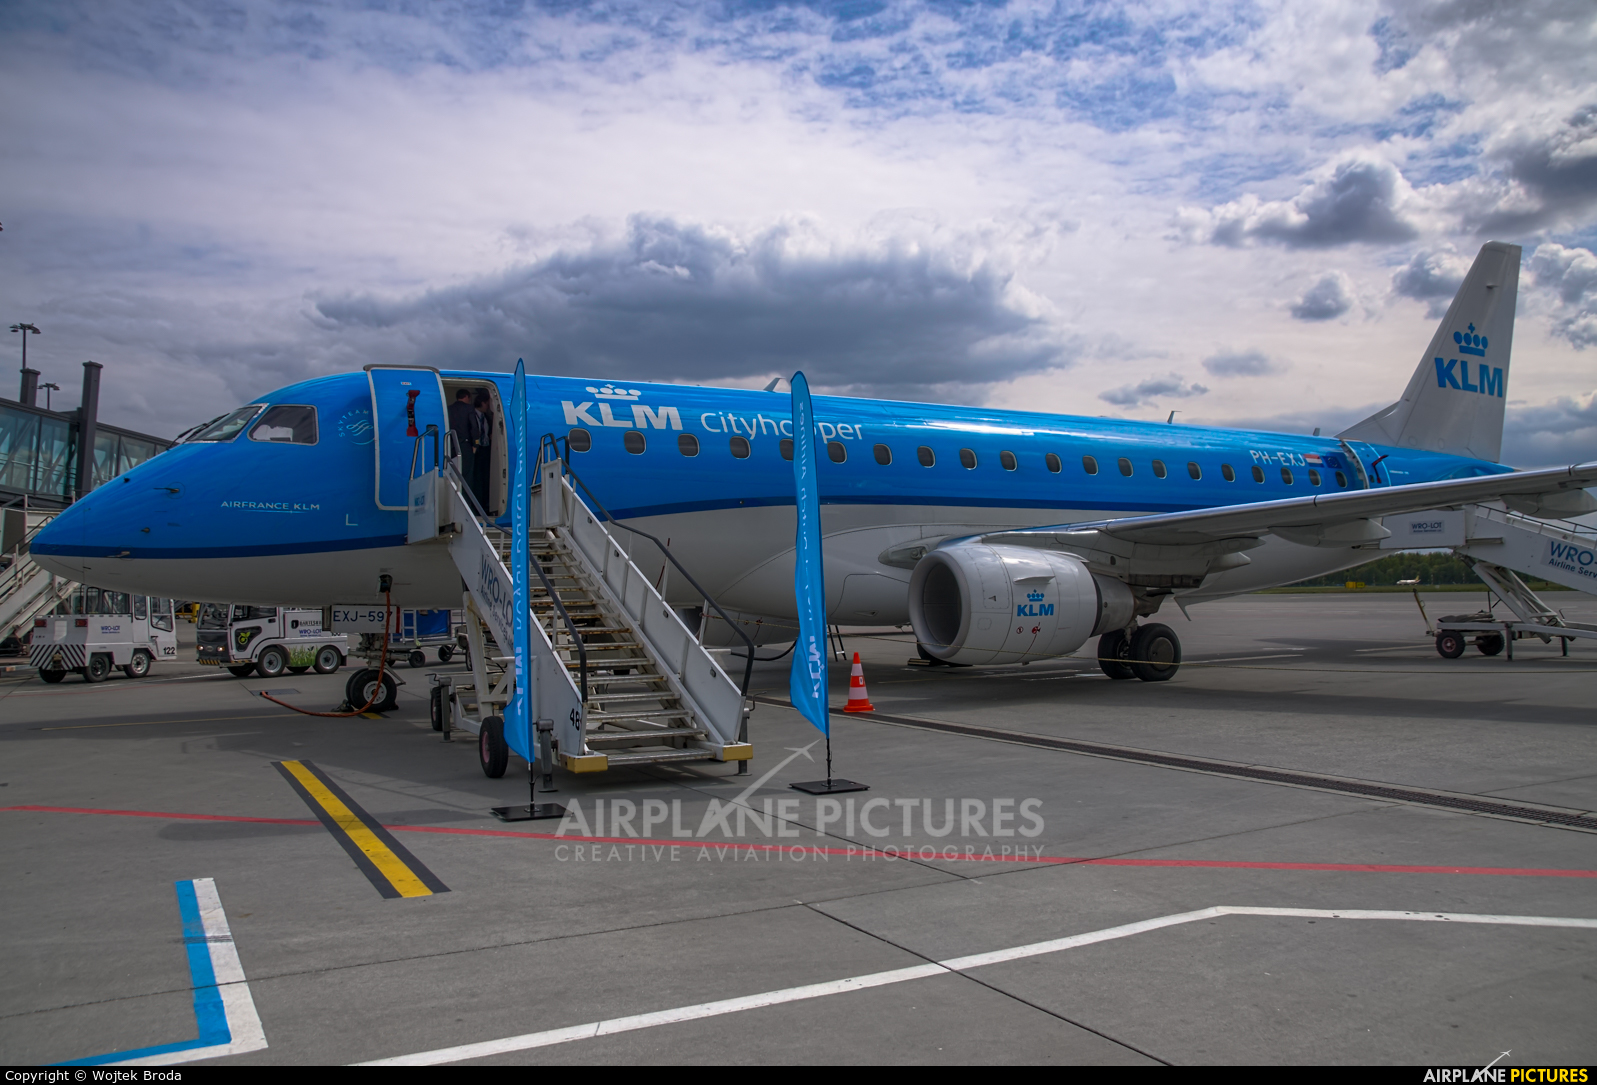 KLM Cityhopper PH-EXJ aircraft at Wrocław - Copernicus